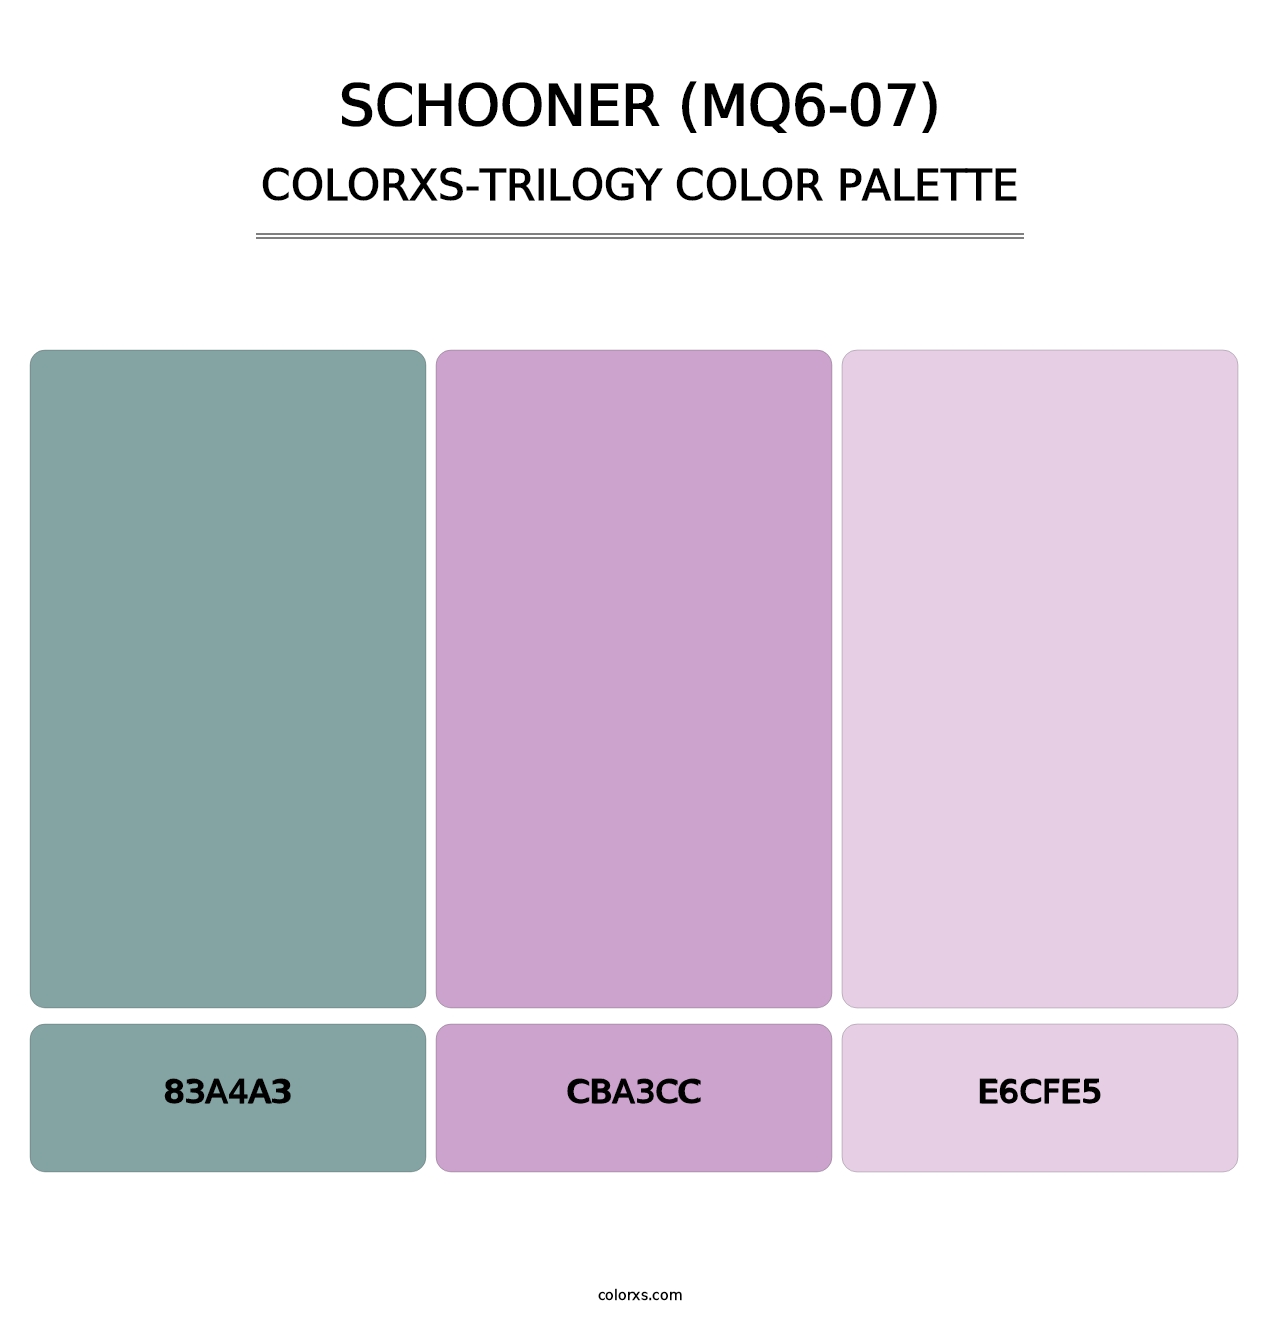 Schooner (MQ6-07) - Colorxs Trilogy Palette